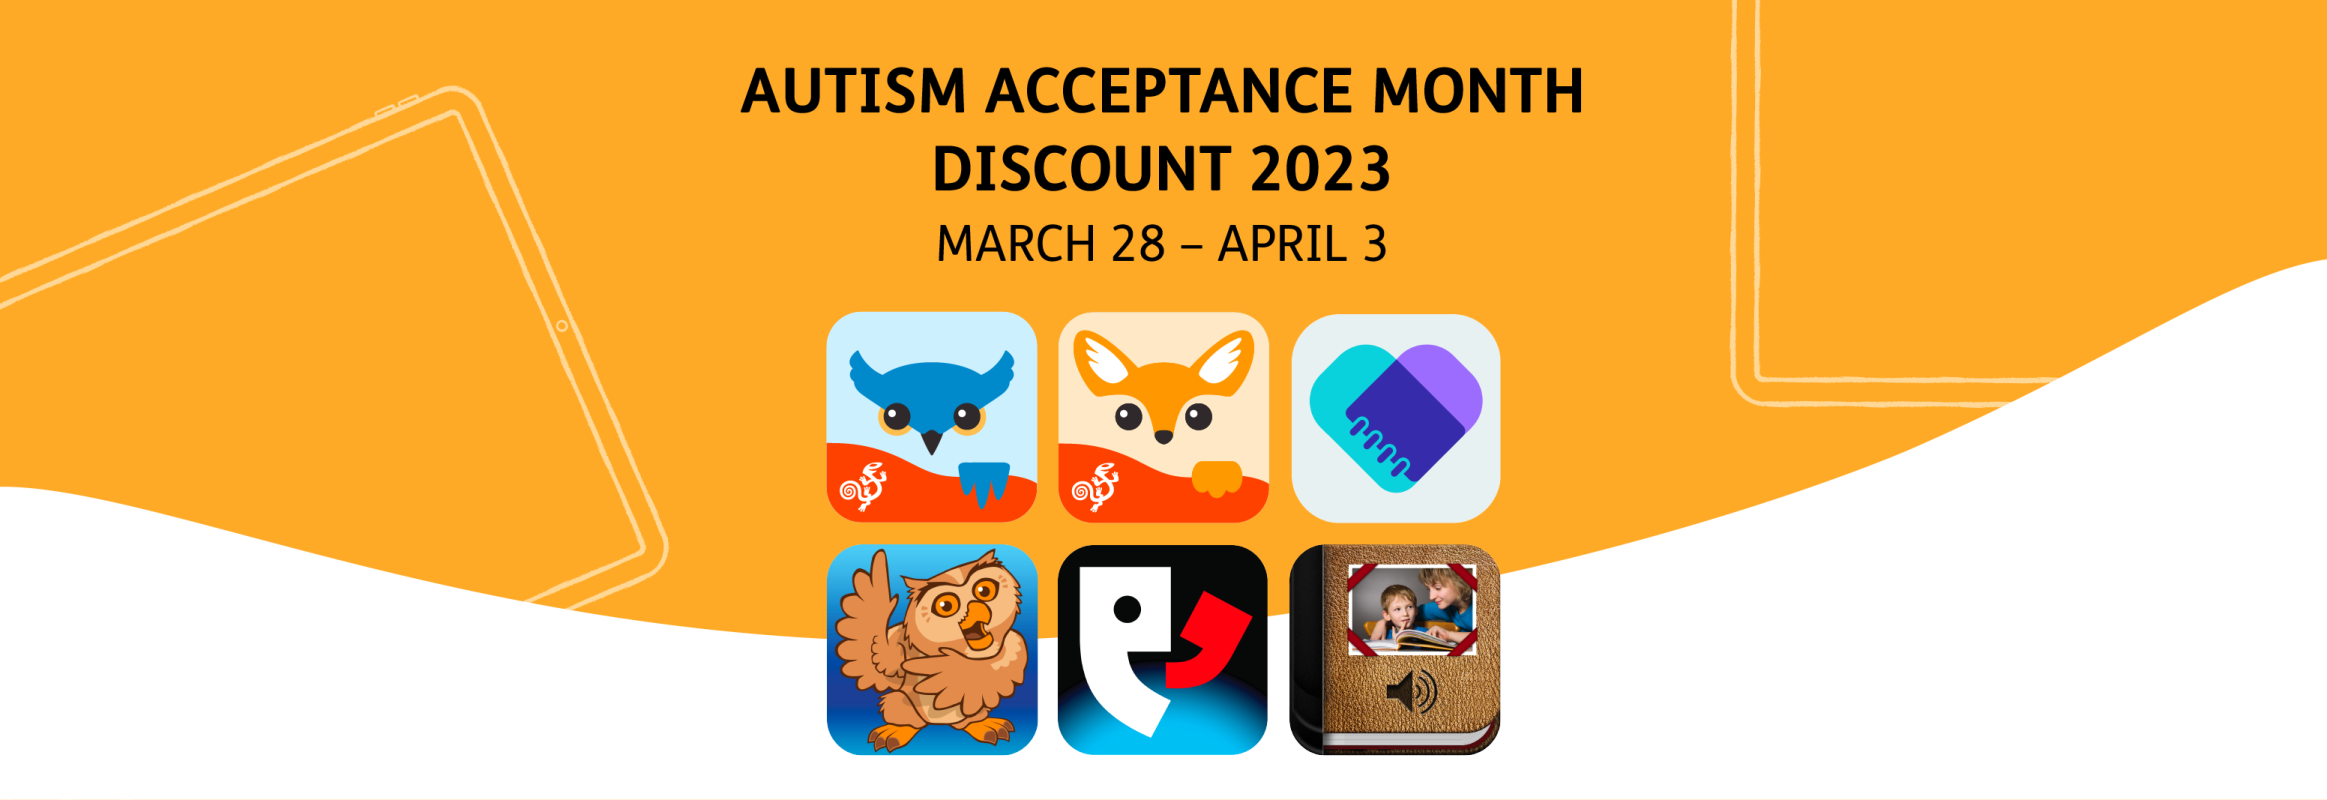 Autism Acceptance Month Discount 2023 - March 28 - April 3